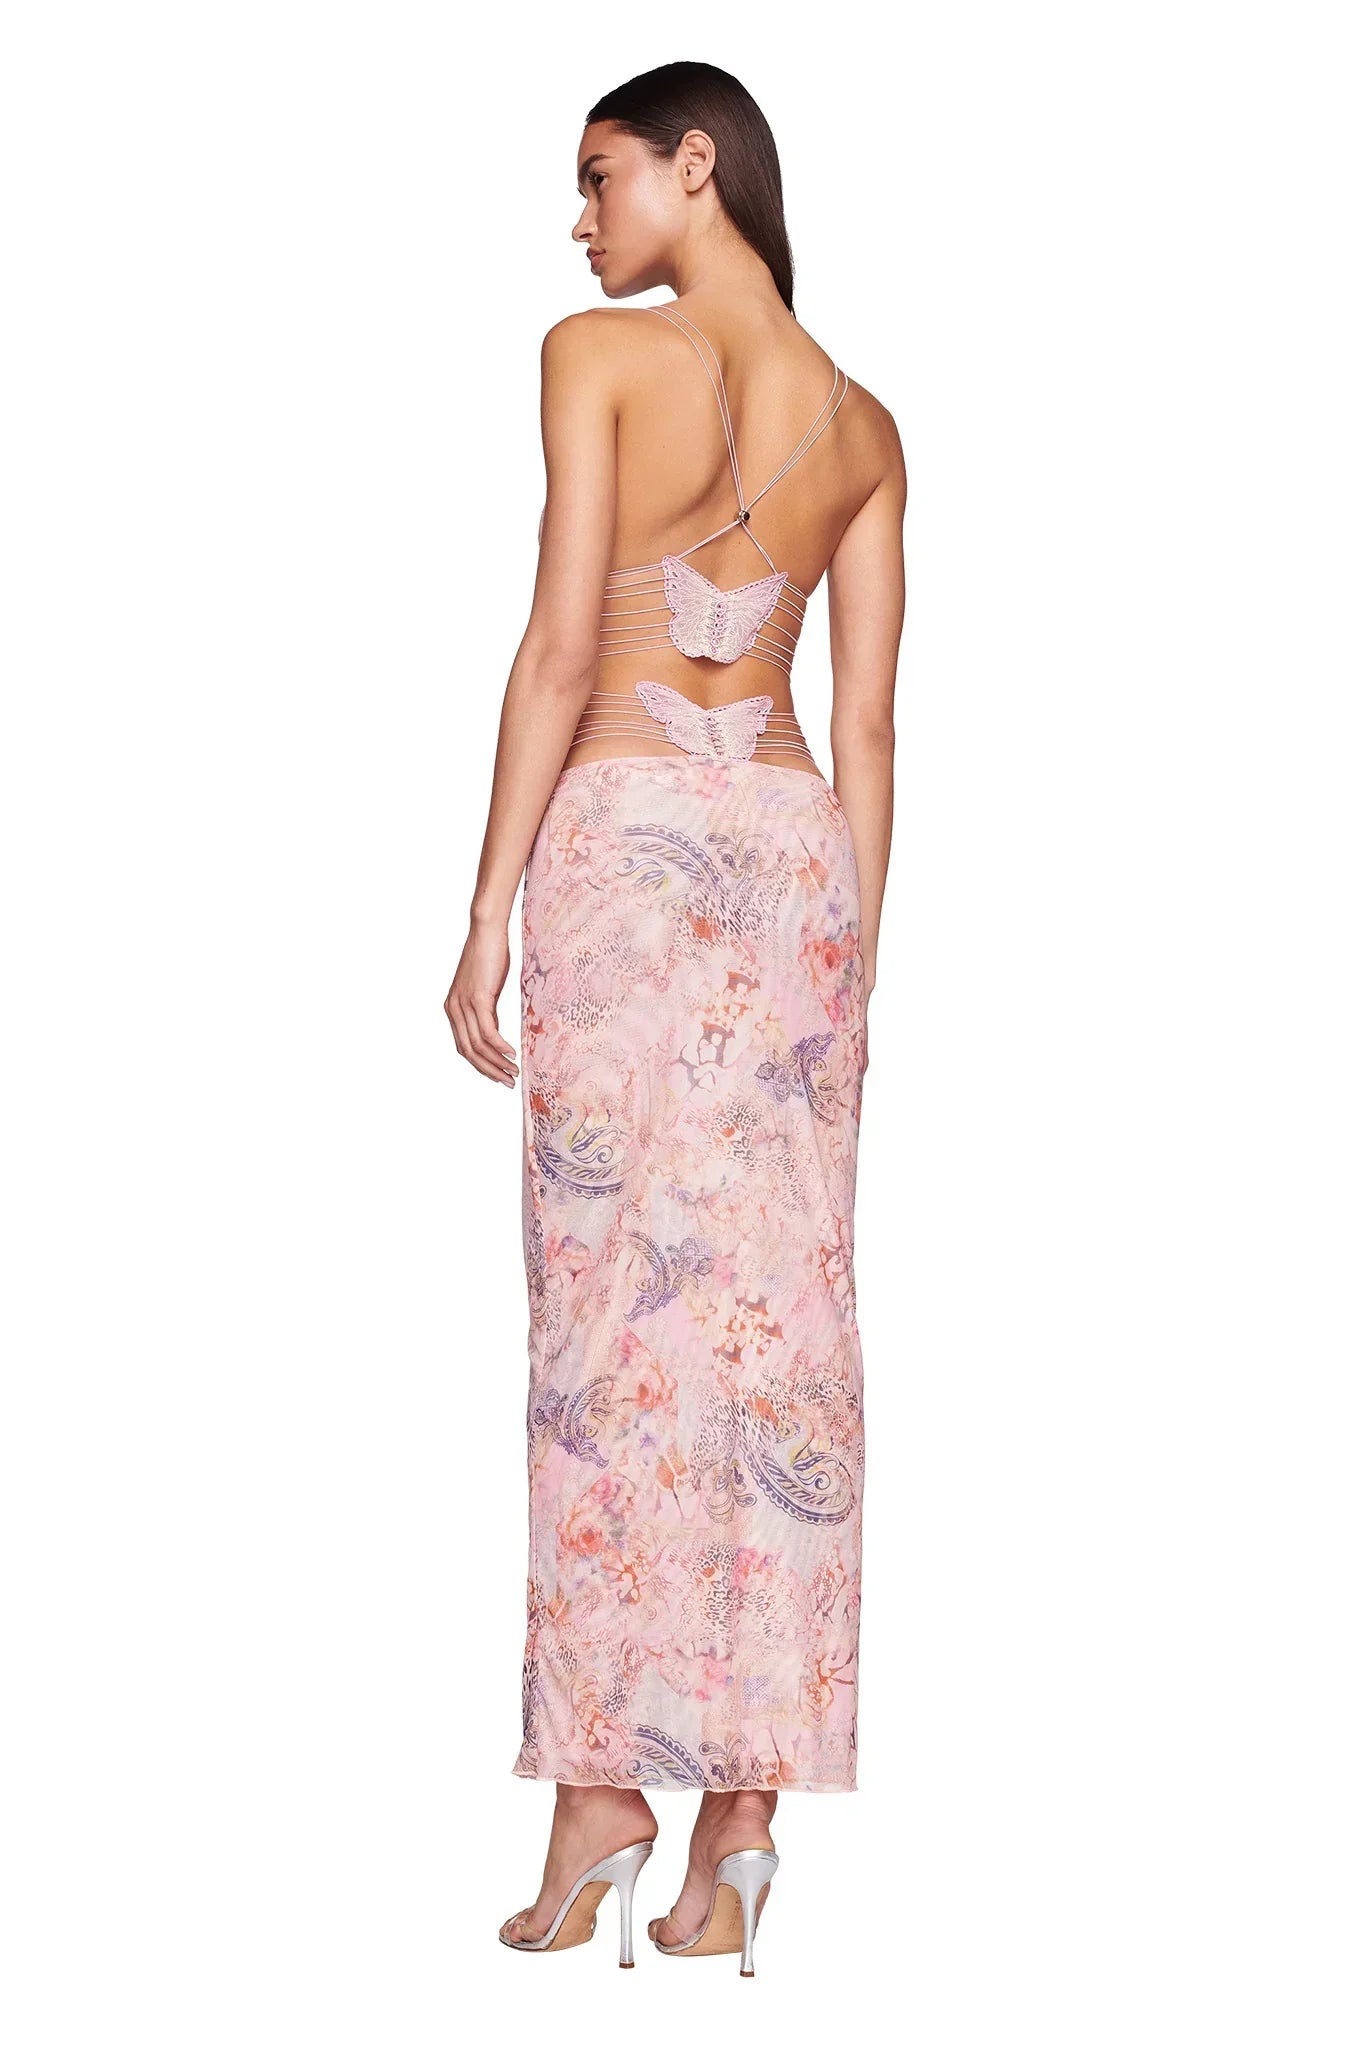 🦋Wąska sukienka z nadrukiem w kształcie motyla, bez pleców, wiązana na szyi